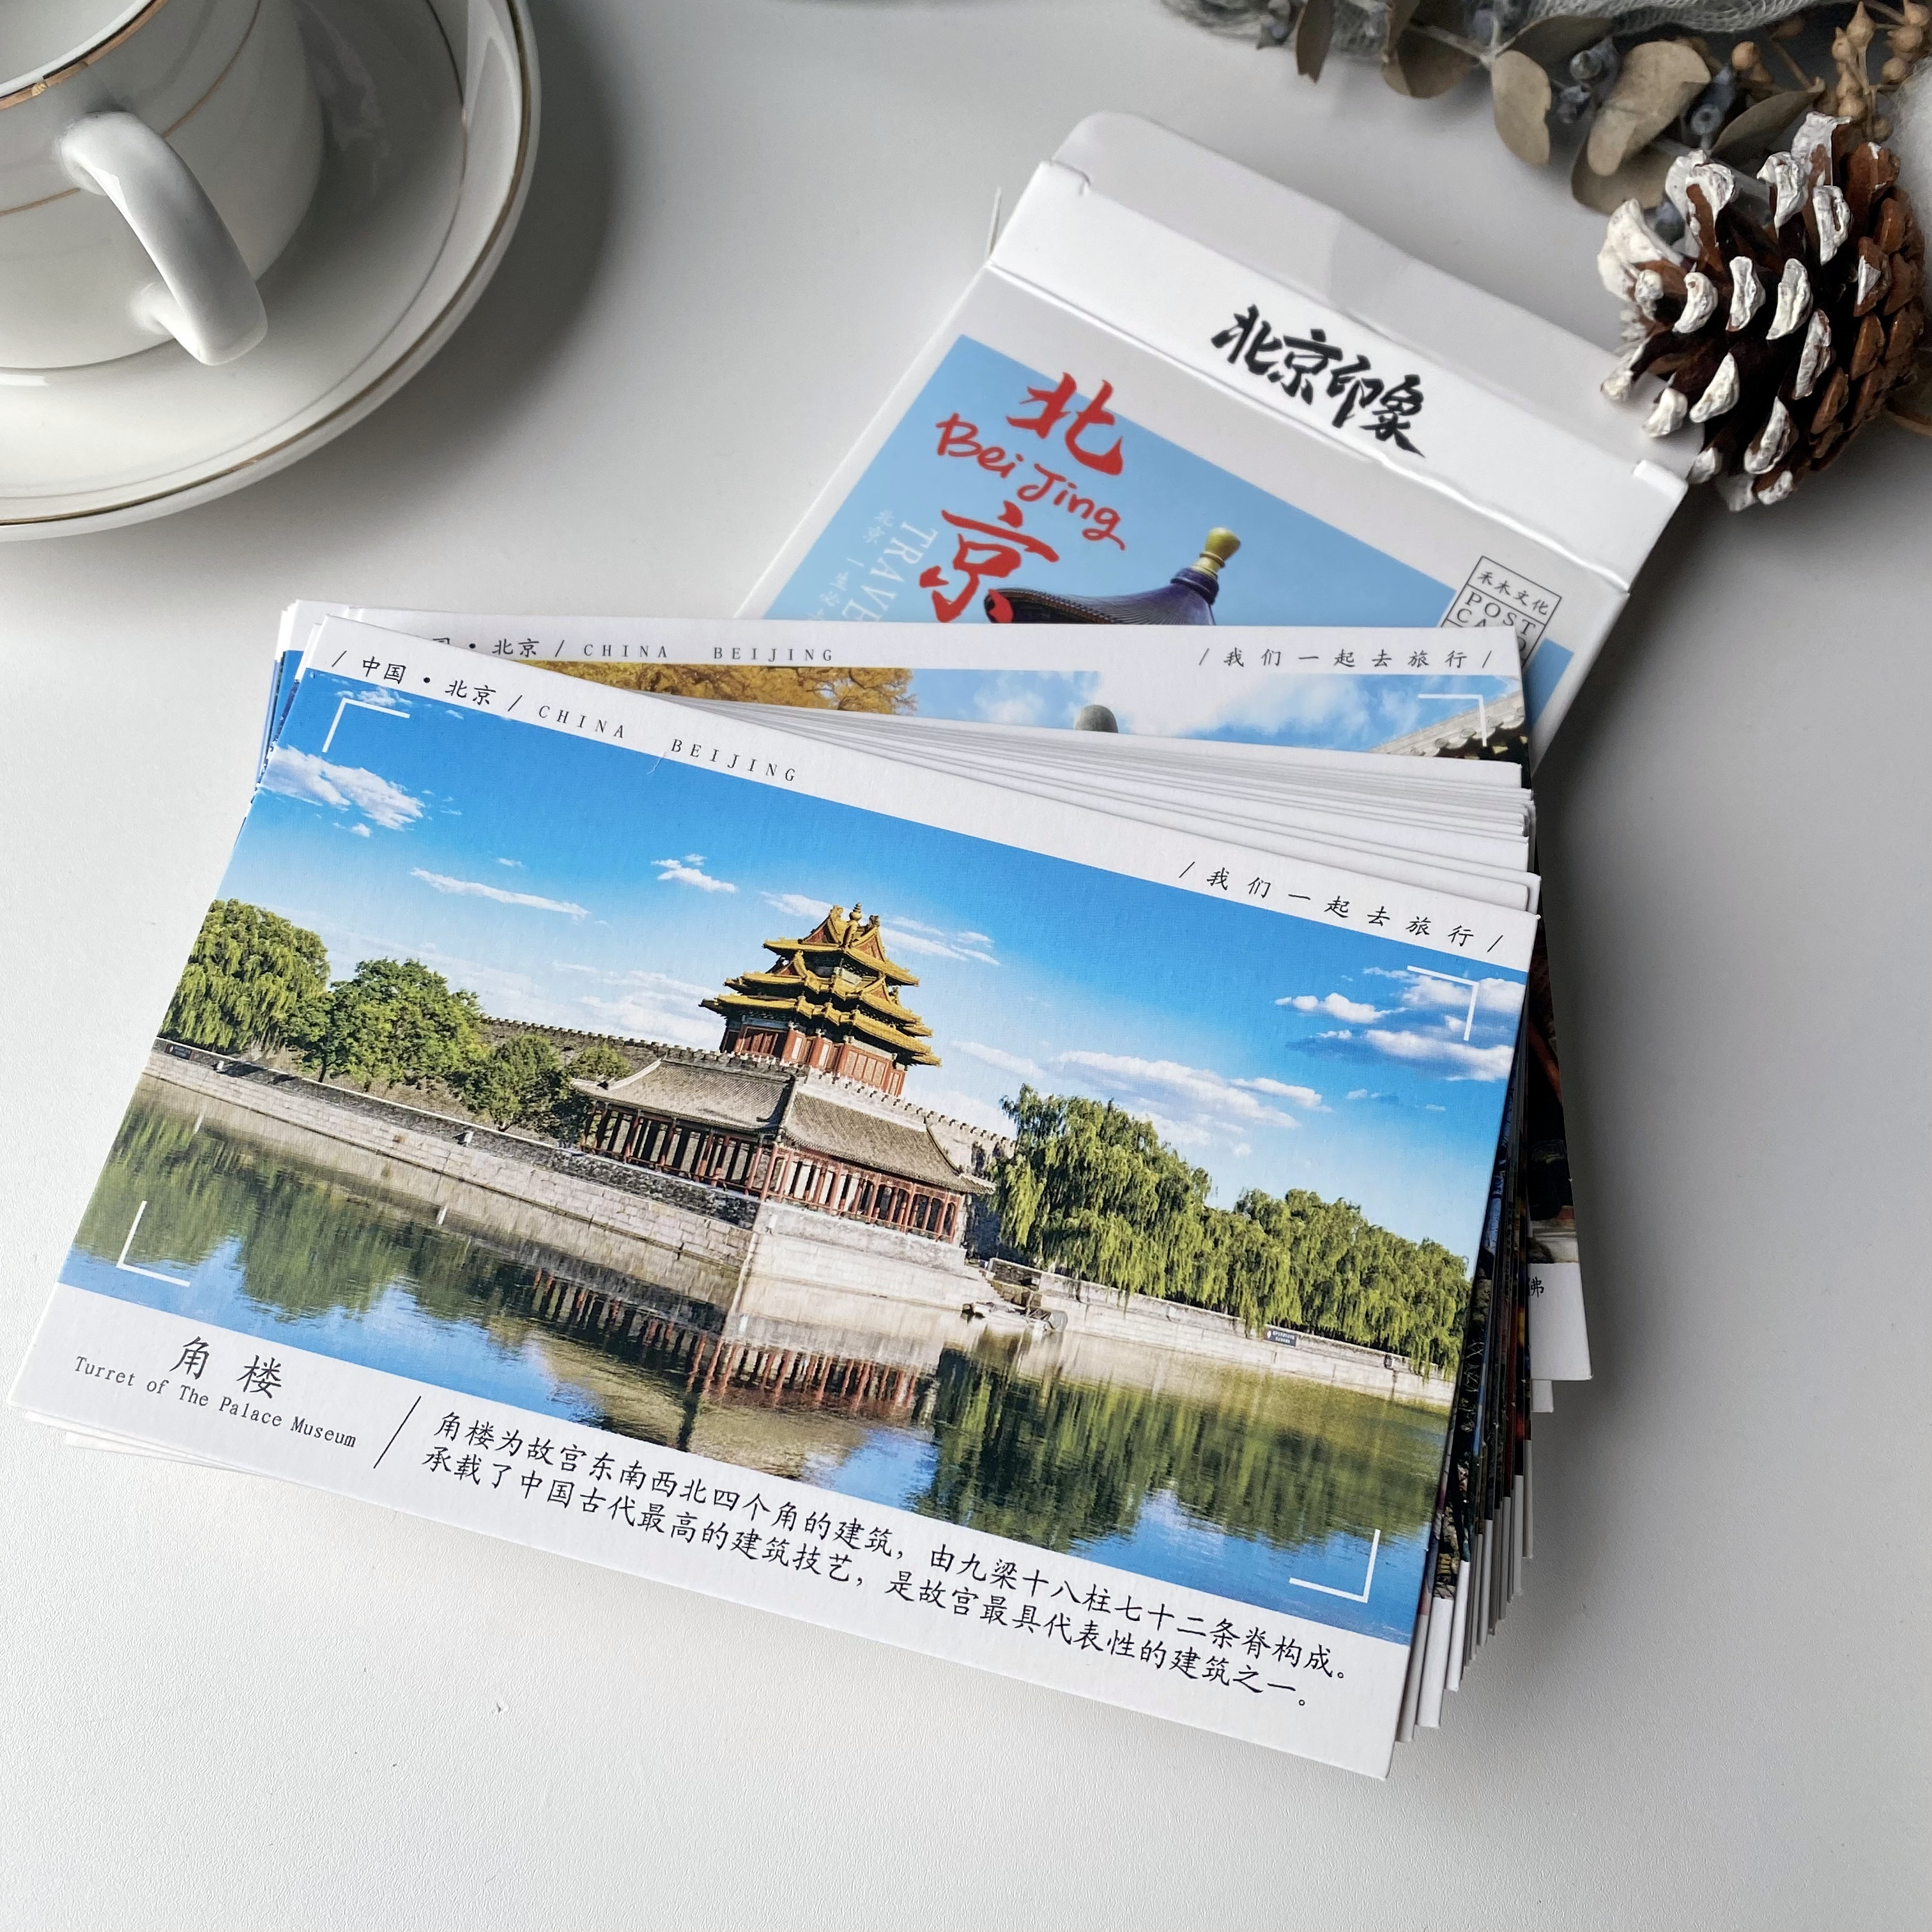 30张北京纪念明信片长城天安门鸟巢水立方颐和园风景卡片简单介绍